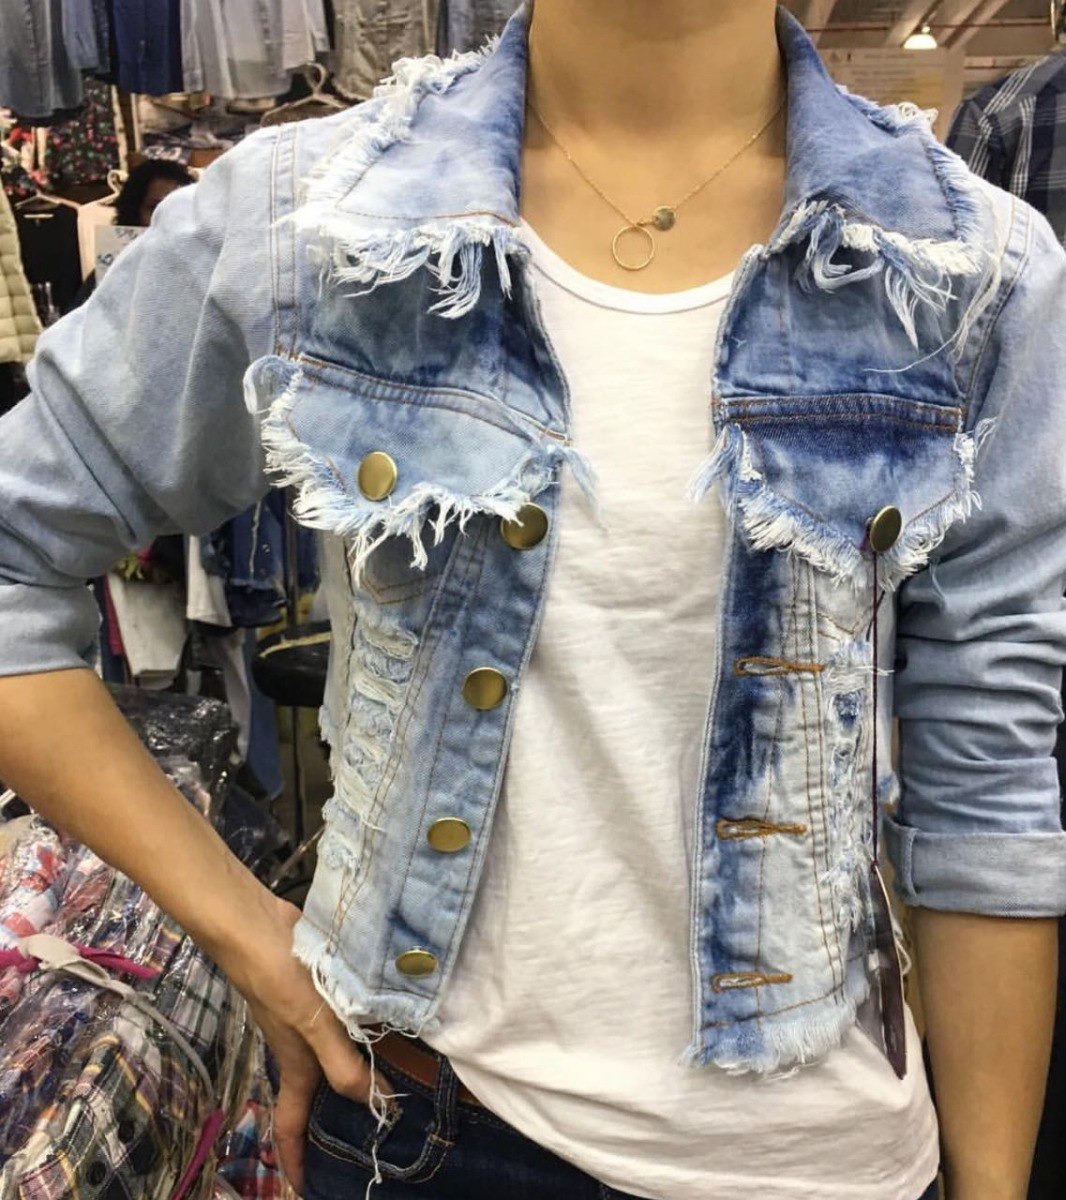 jaquetas femininas jeans mercado livre